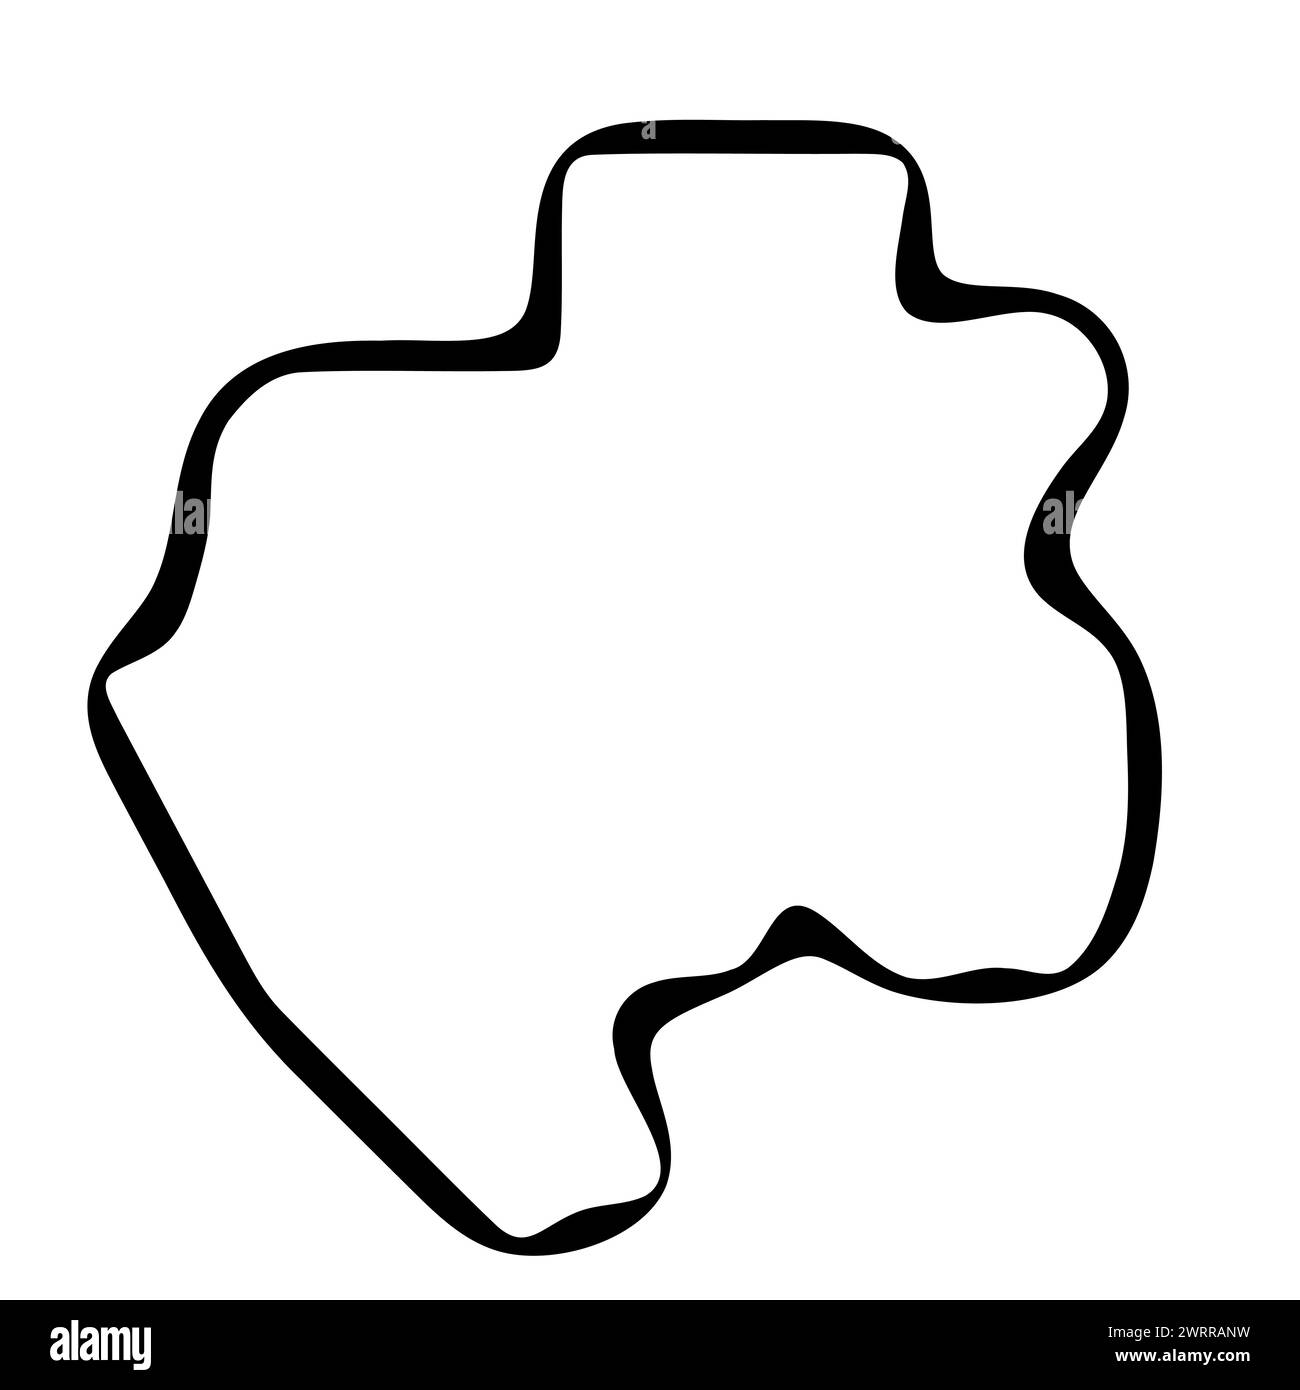 Vereinfachte Karte für Gabun. Schwarze Tinte glatte Kontur auf weißem Hintergrund. Einfaches Vektorsymbol Stock Vektor